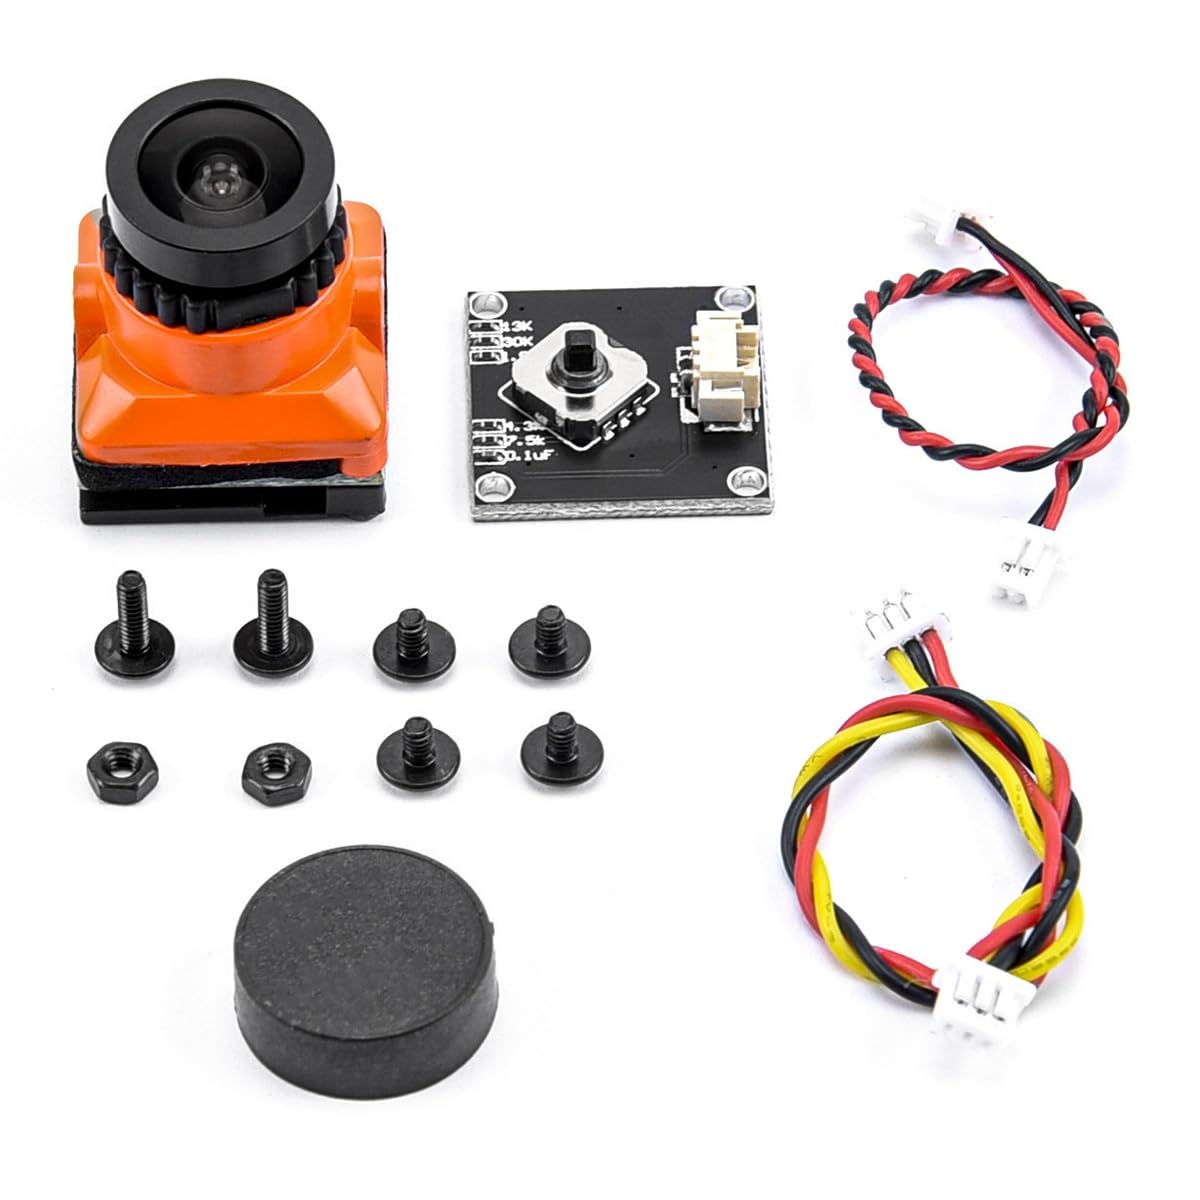 SETLNORA FPV-Kamera HD 1500TVL 2,1 mm Weitwinkel mit OSD-Anpassungsplatine für FPV RC Racing Drone Zubehör,Orange